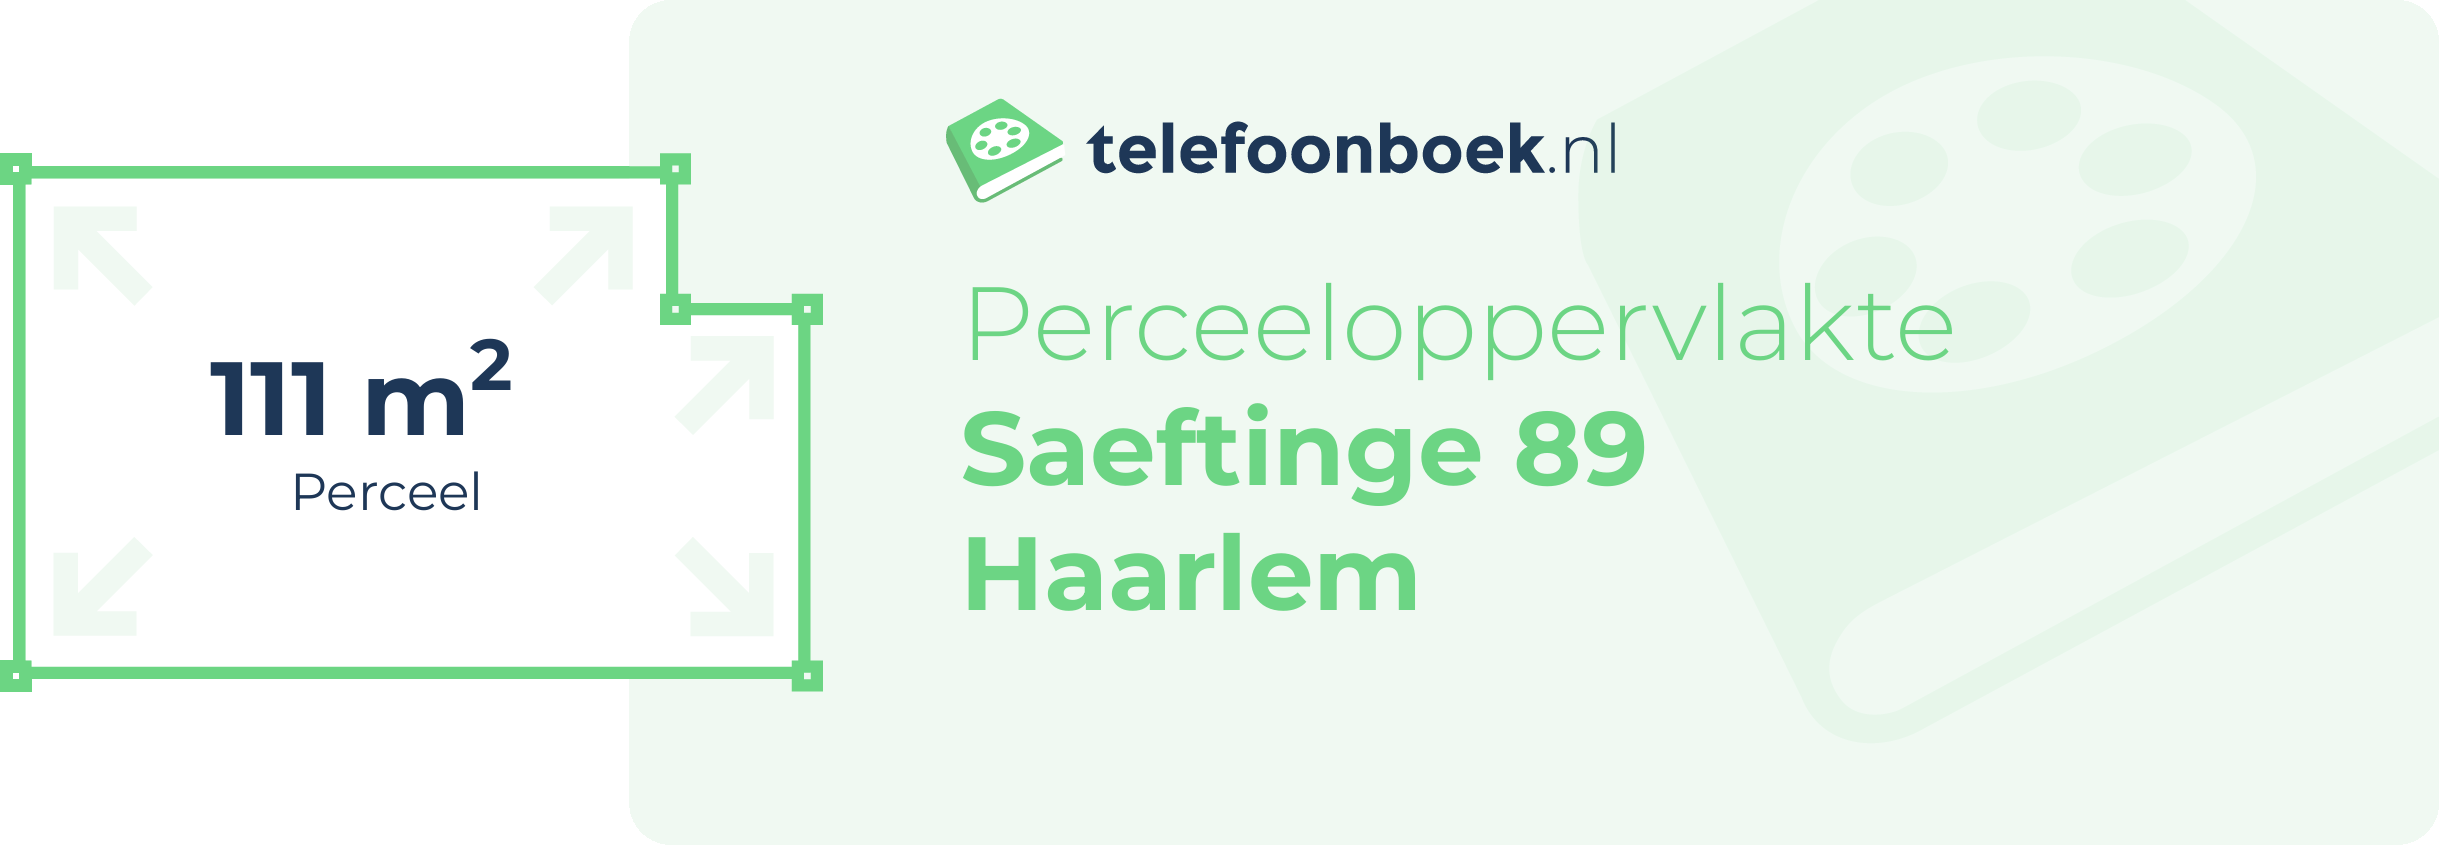 Perceeloppervlakte Saeftinge 89 Haarlem